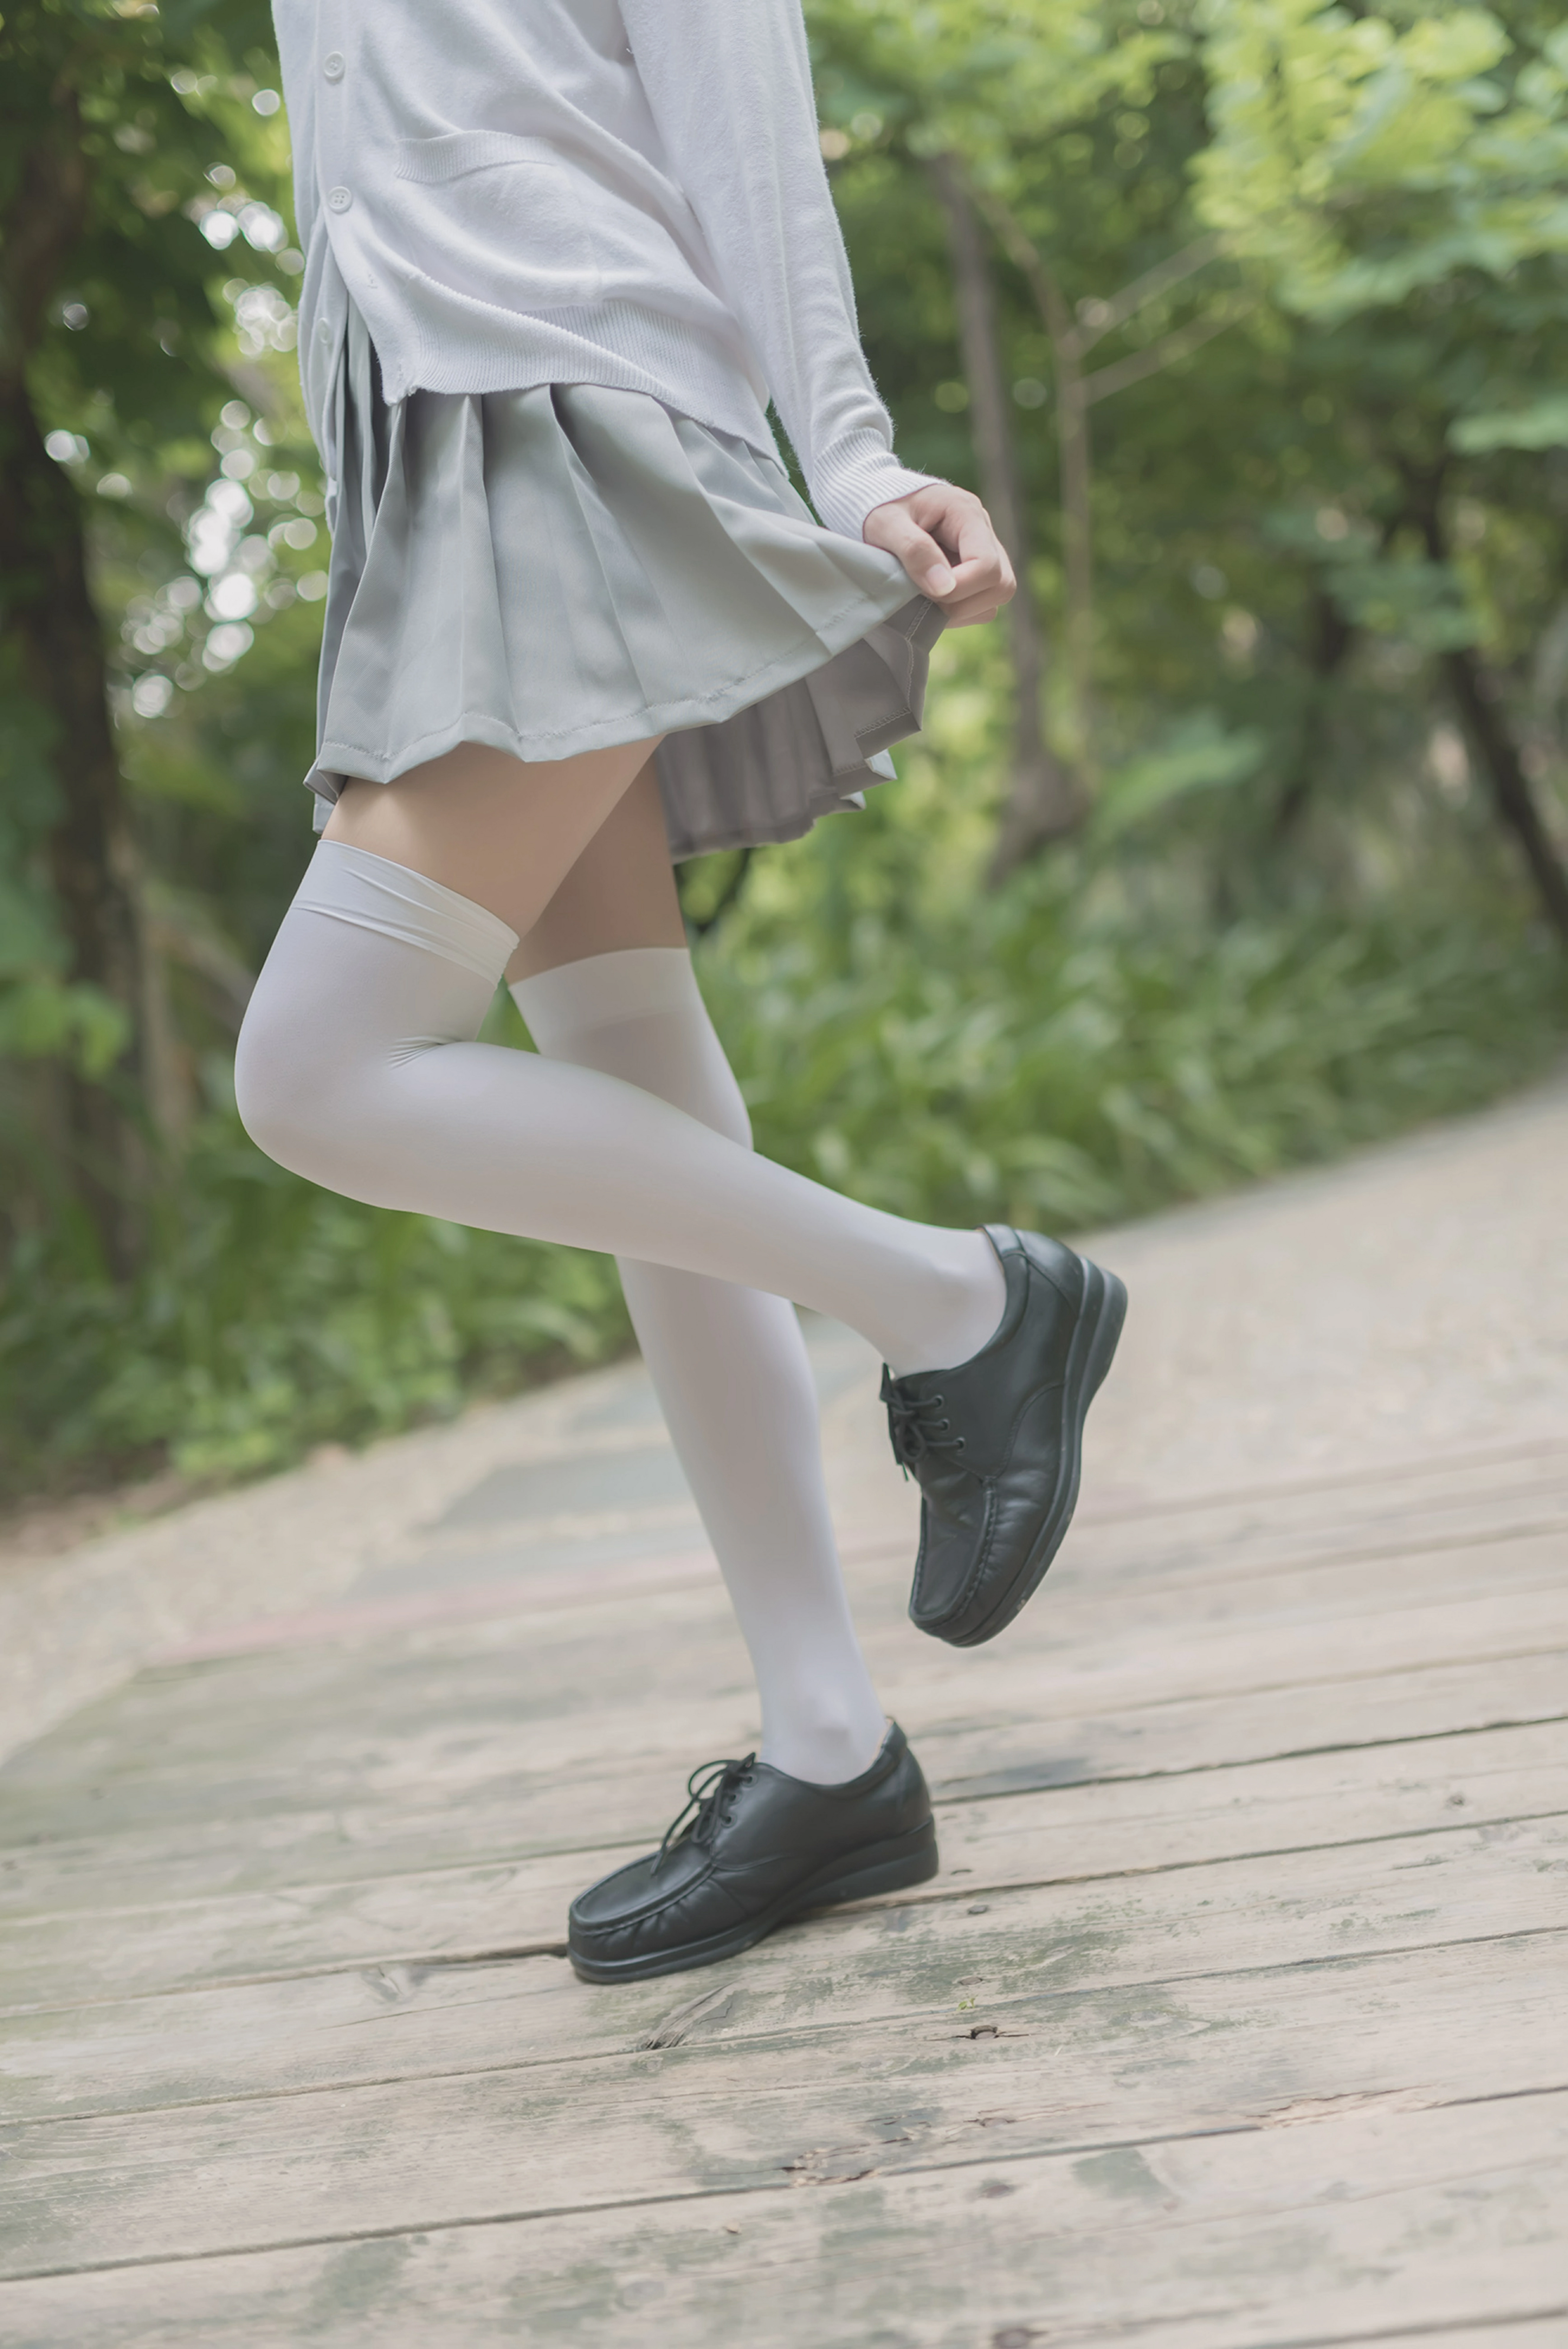 [风之领域]NO.190 萝莉小学妹 灰色格子短裙加白色丝袜美腿性感私房写真集,